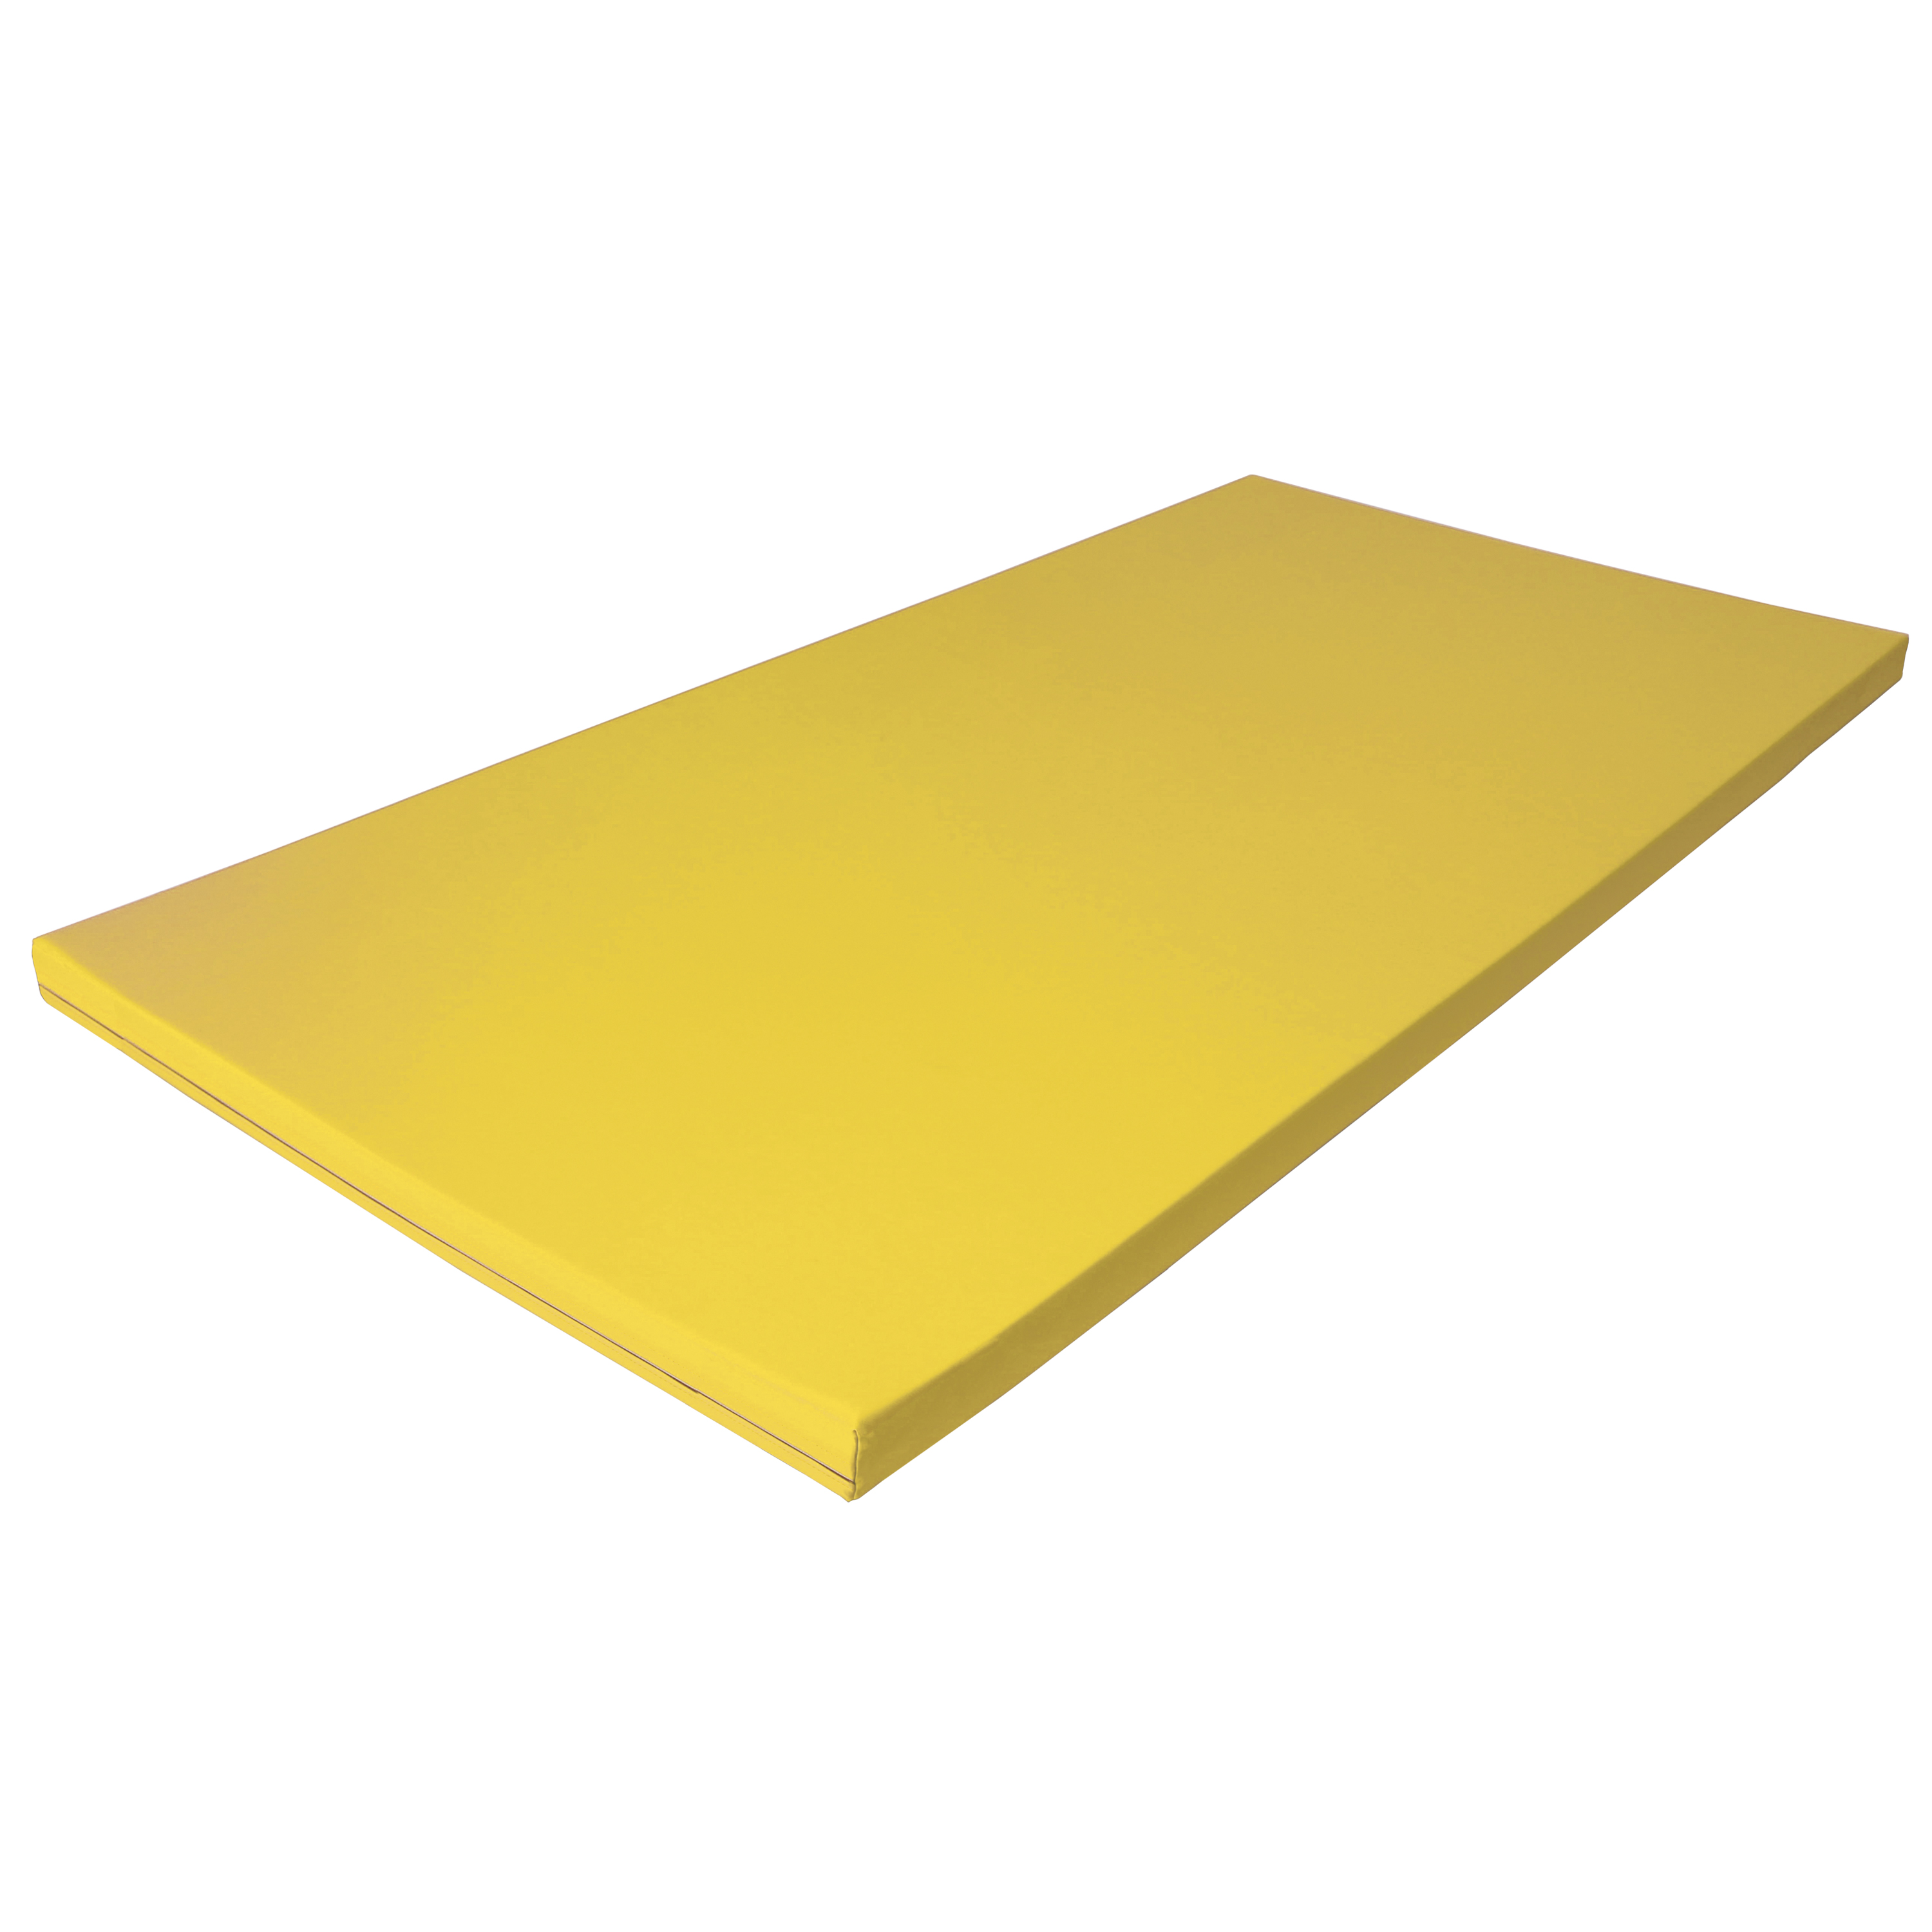 Fallschutzmatte Superleicht 'gelb', 150 x 100 cm